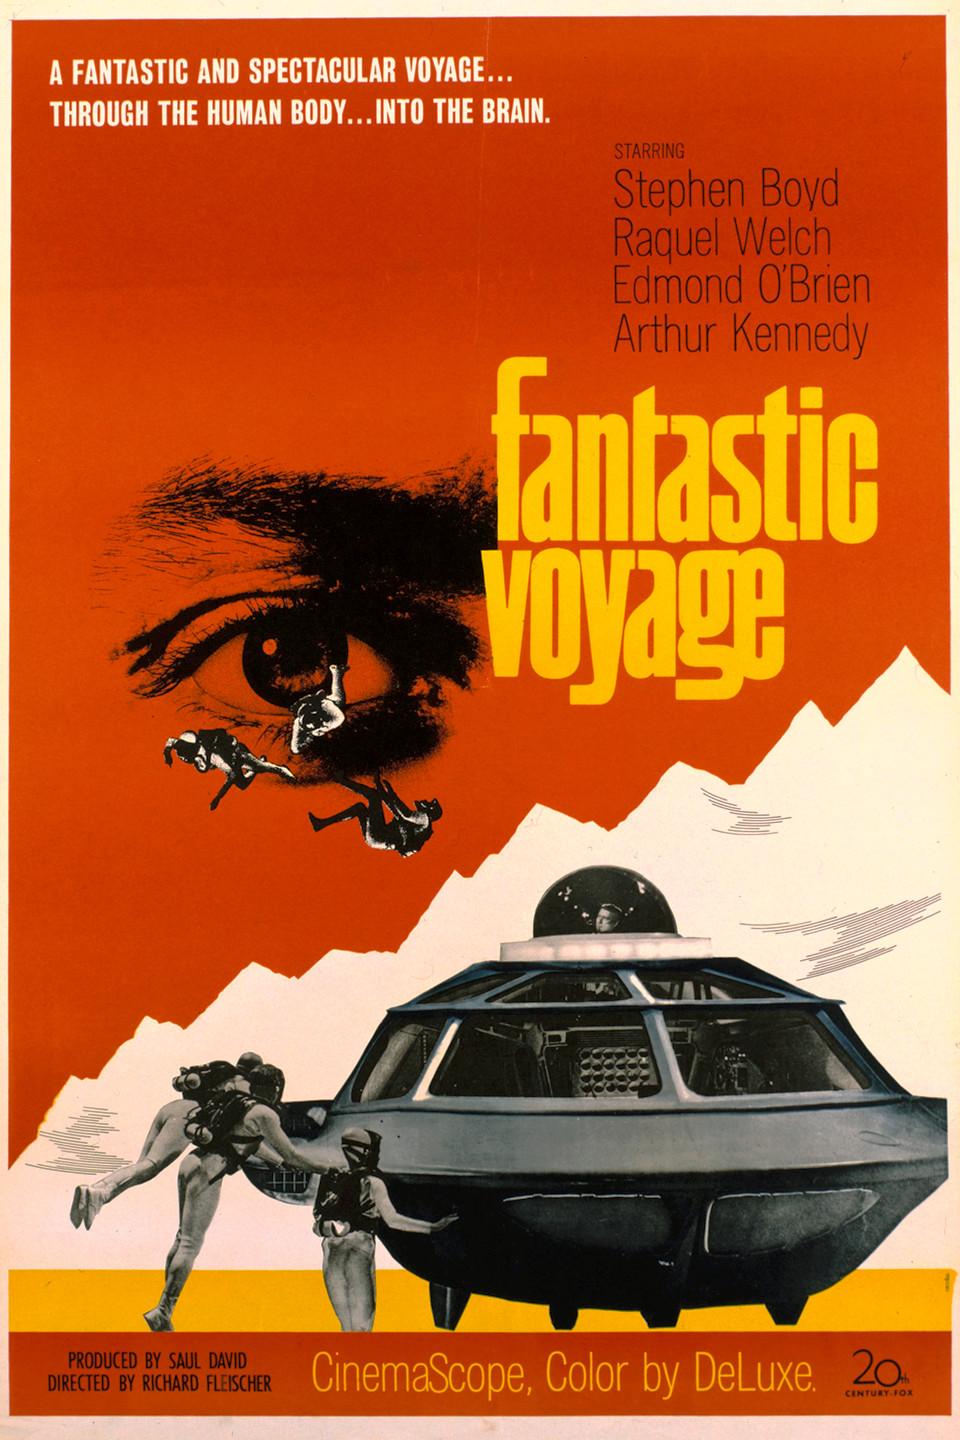 john's fantastic voyages